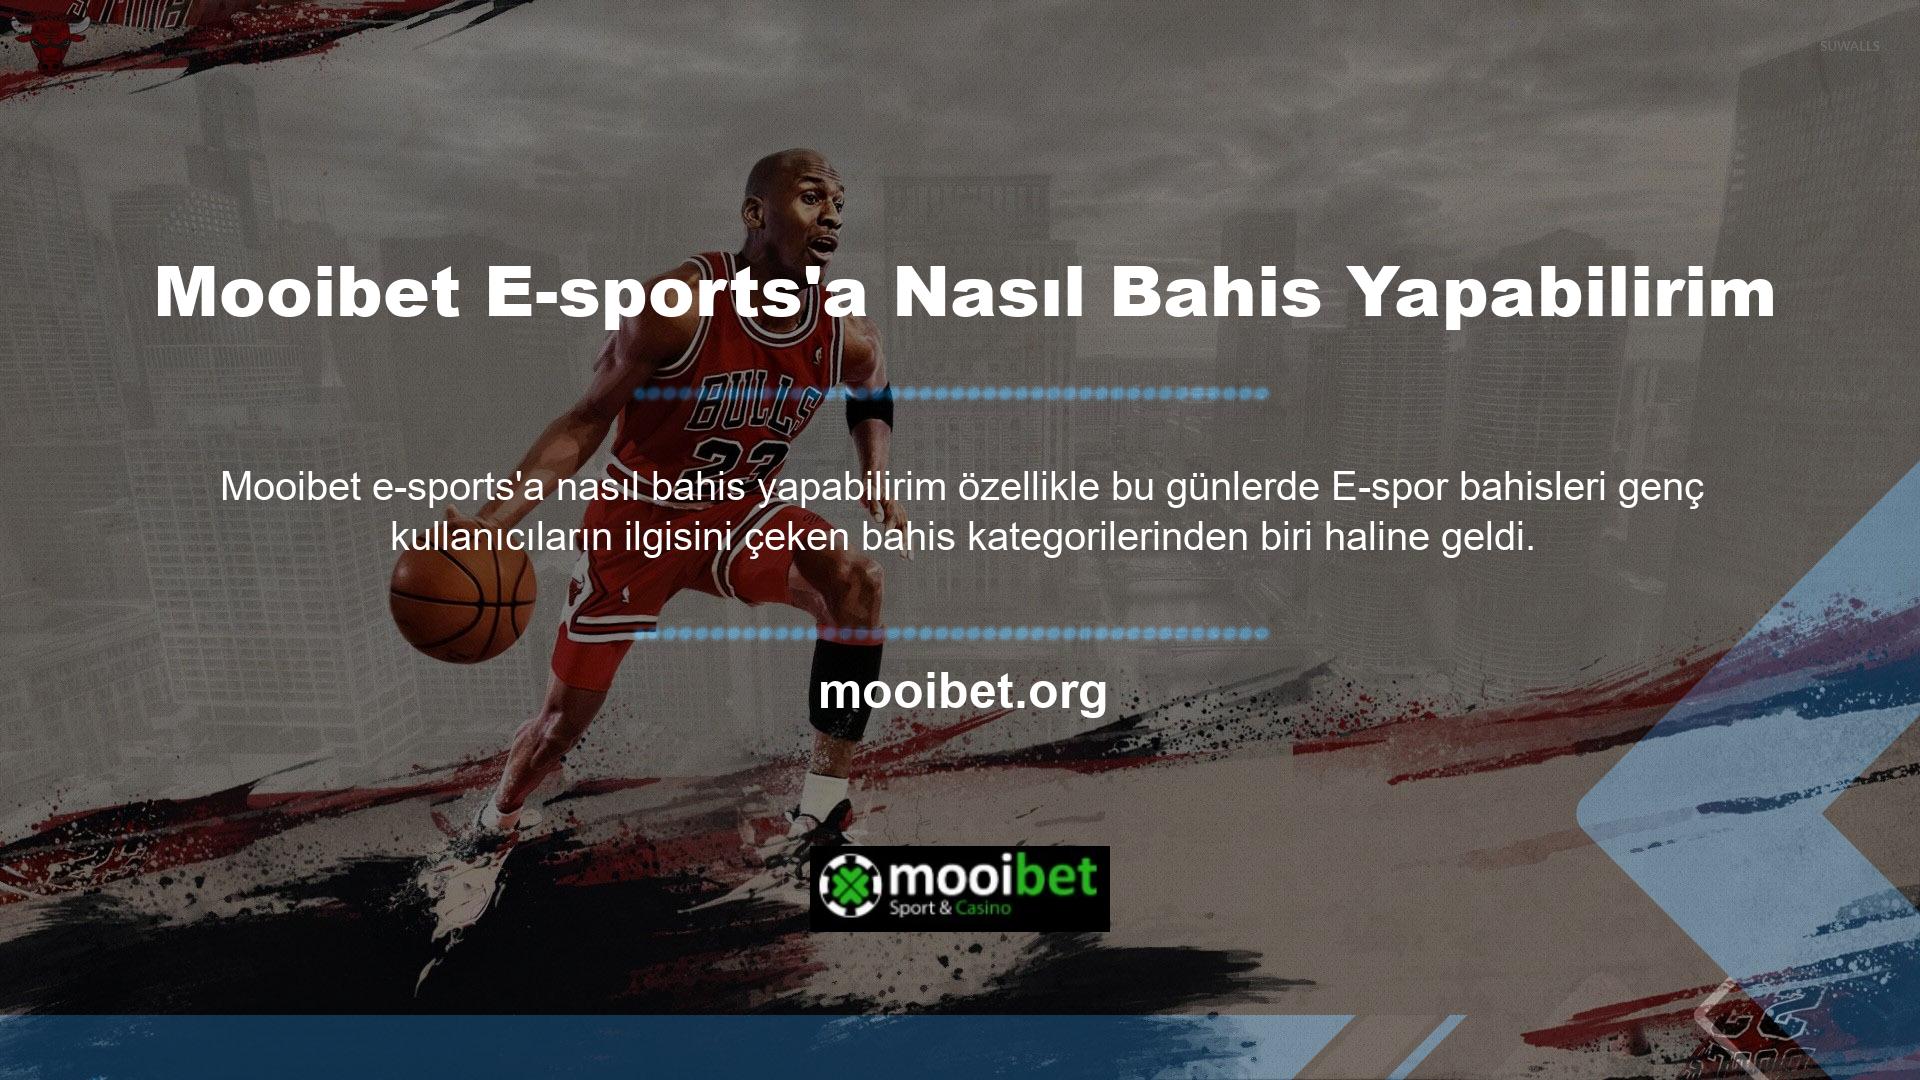 Mooibet spor hizmetleri ile karşılaştırıldığında Mooibet, gerçek bir oyuncunun bakış açısından küresel bir canlı bahis alternatifi olarak yorumlanabilir